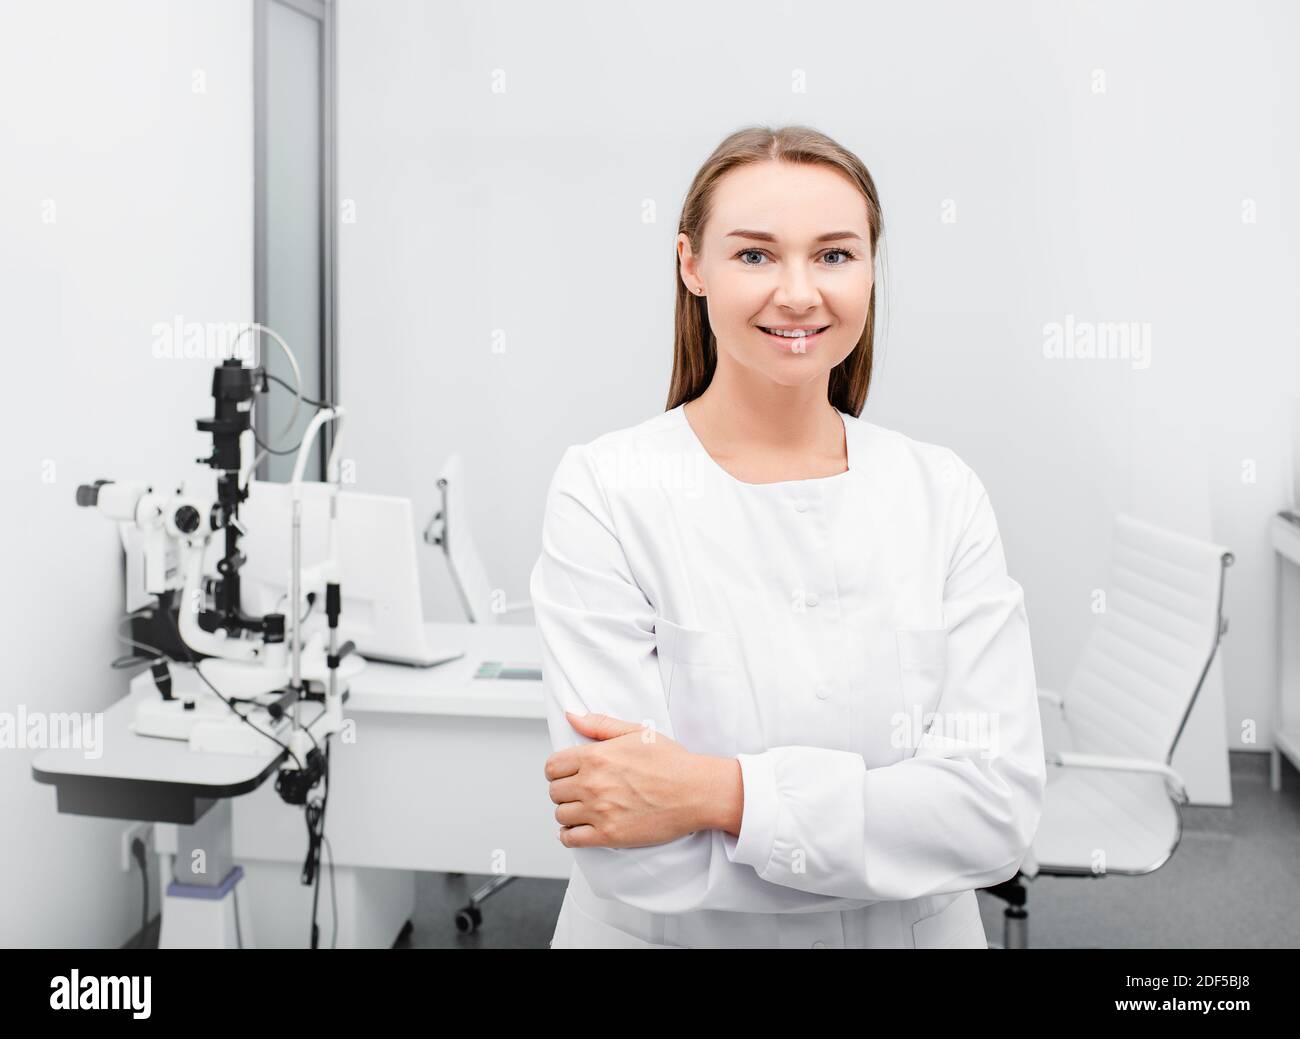 Ritratto di un'optometricia femminile positiva vicino ad apparecchiature oftalmiche in un moderno ufficio oftalmologico Foto Stock